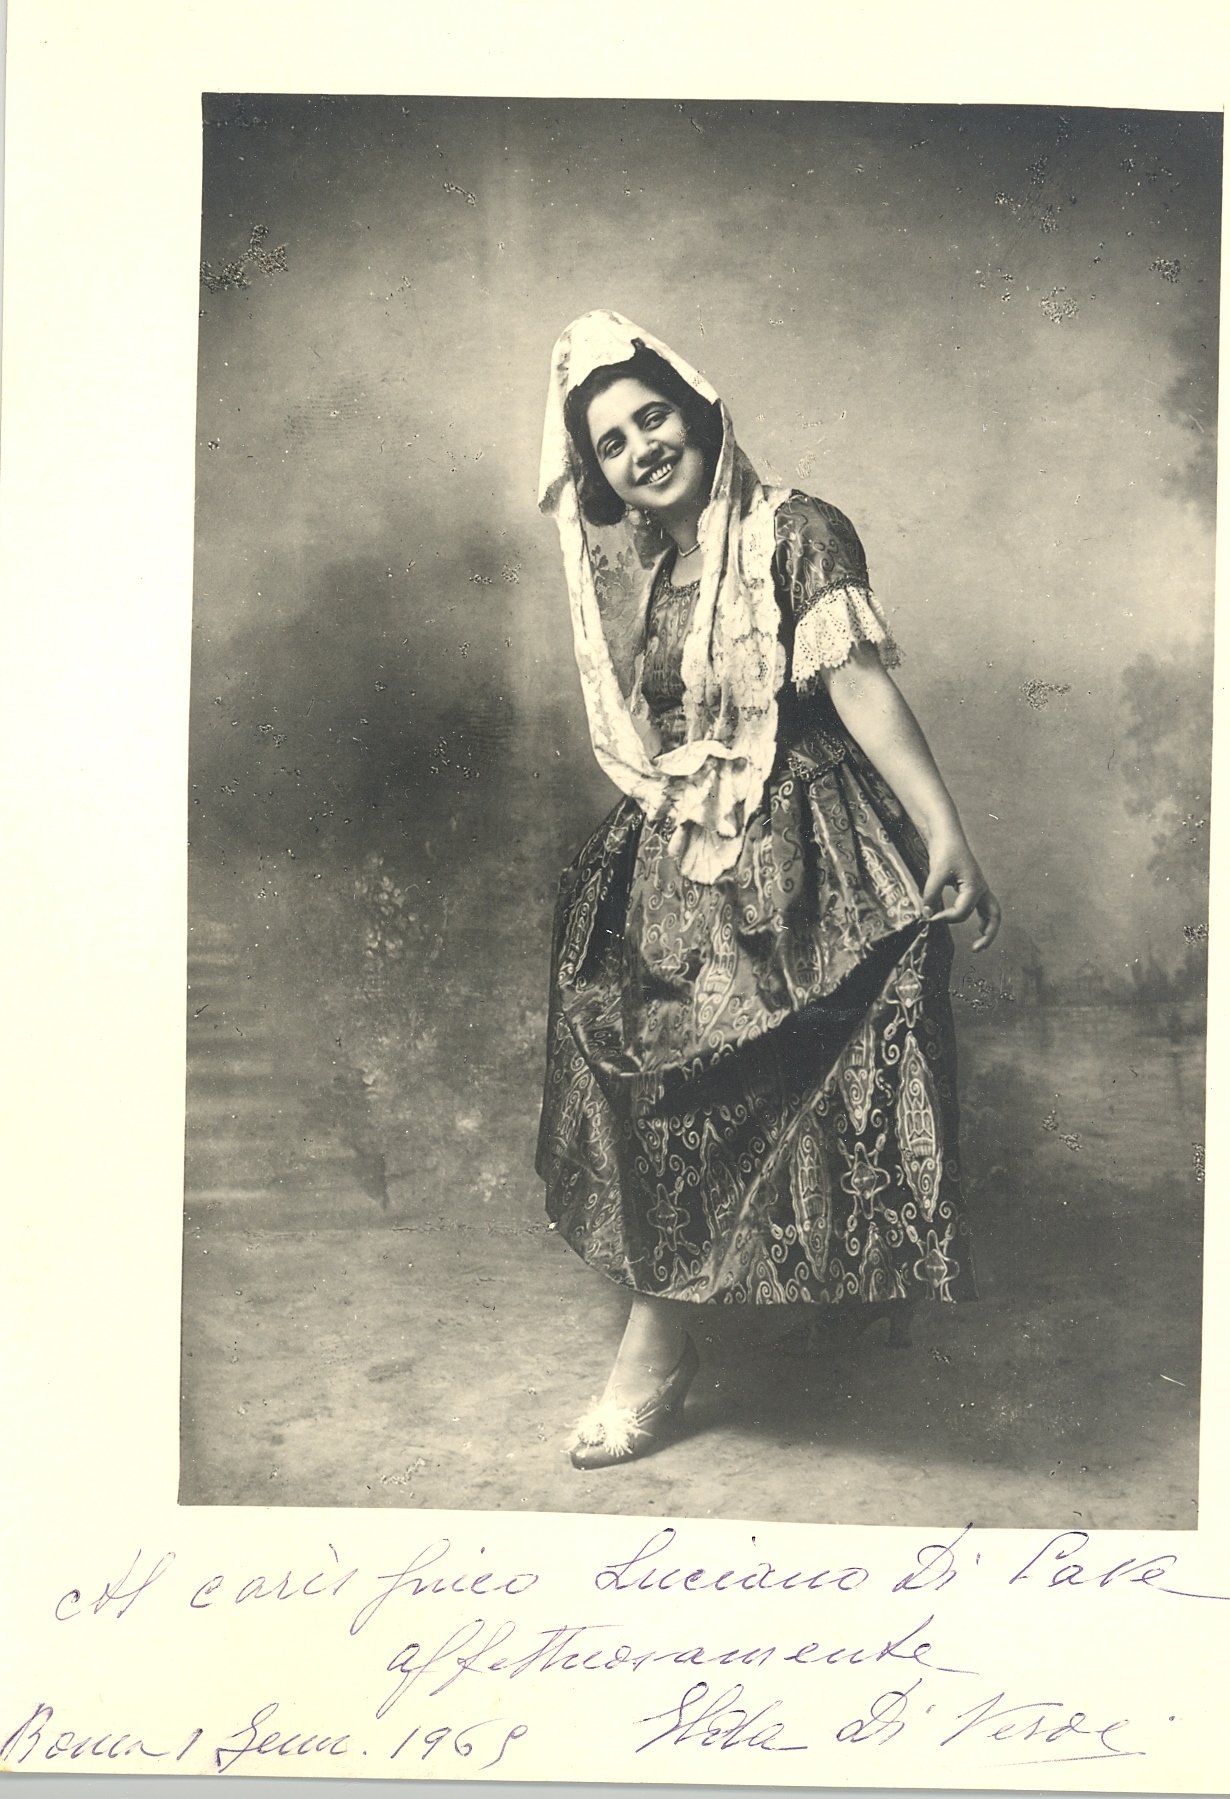 Lina Pagliughi (1907-05-27 – 1980-10-02). Operatic sopranos